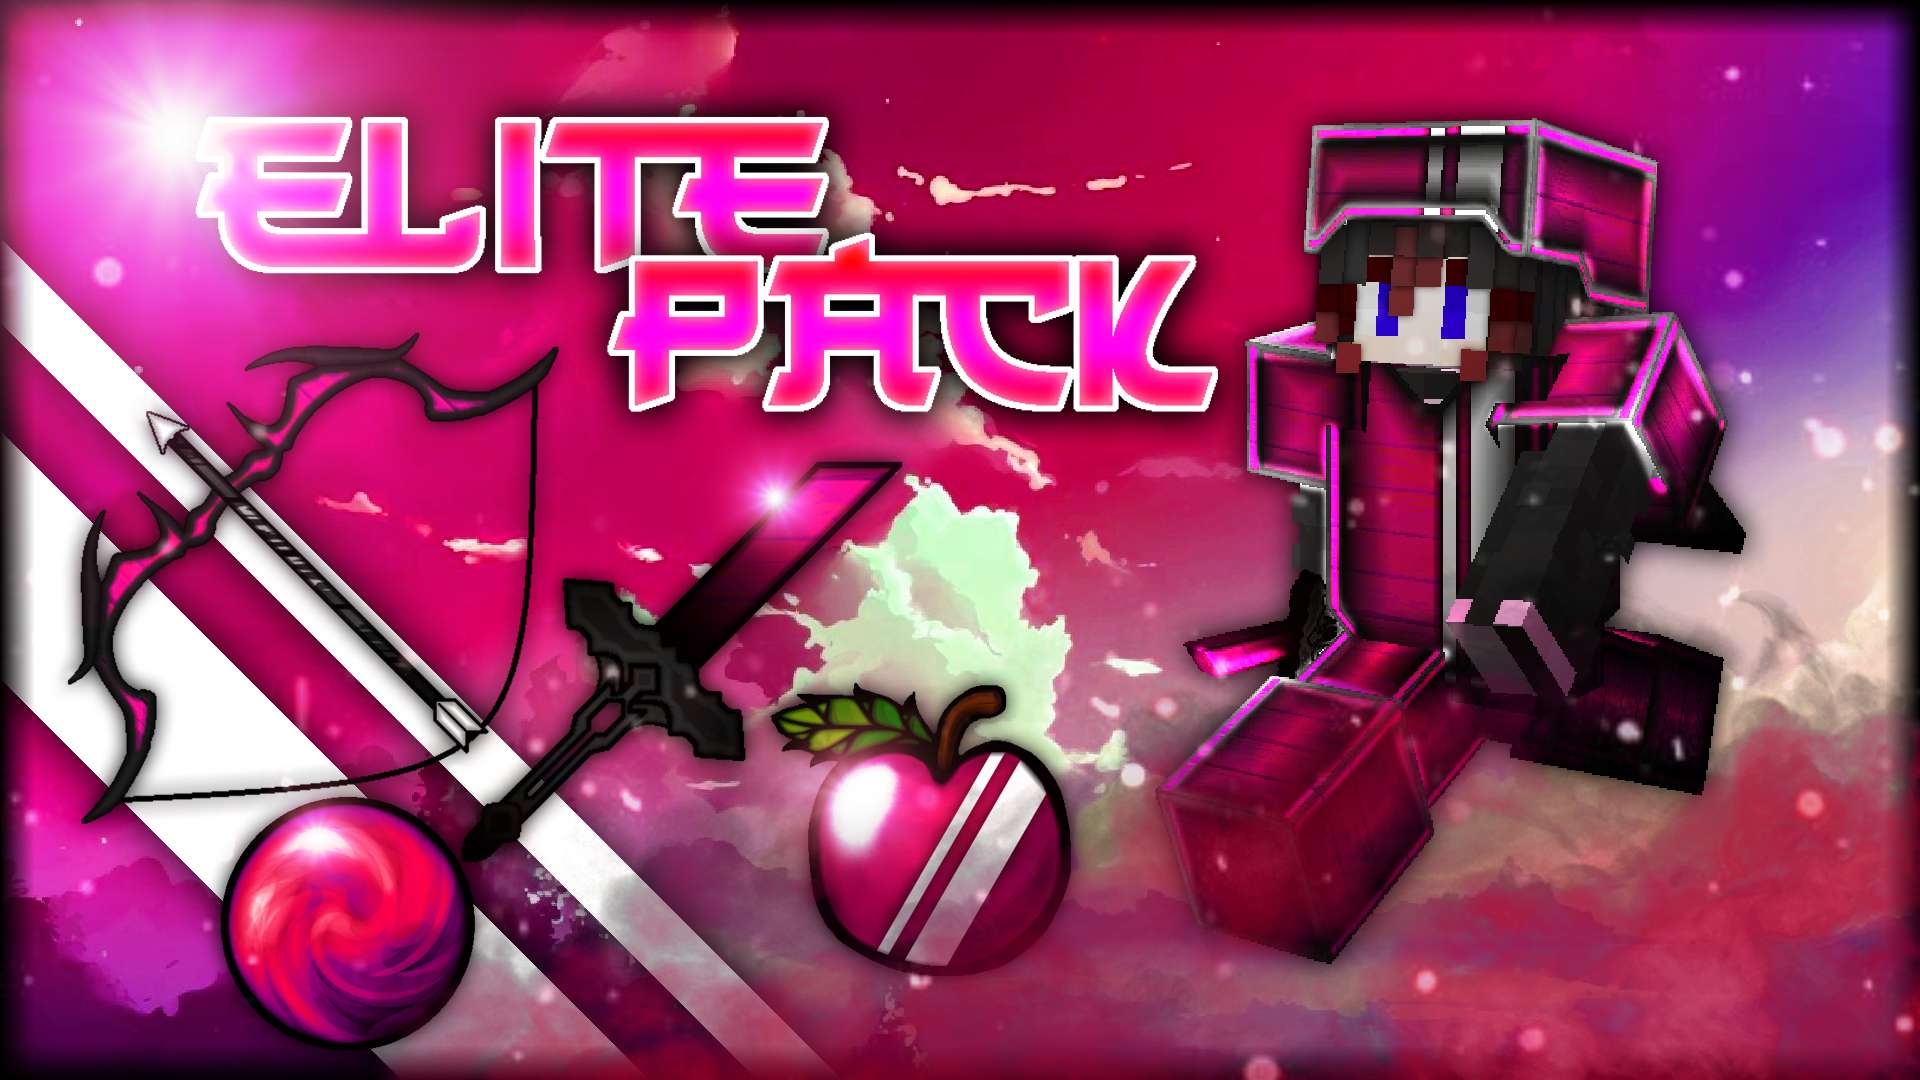 🔥 Elite Pack - Pink 512x by Moniia on PvPRP